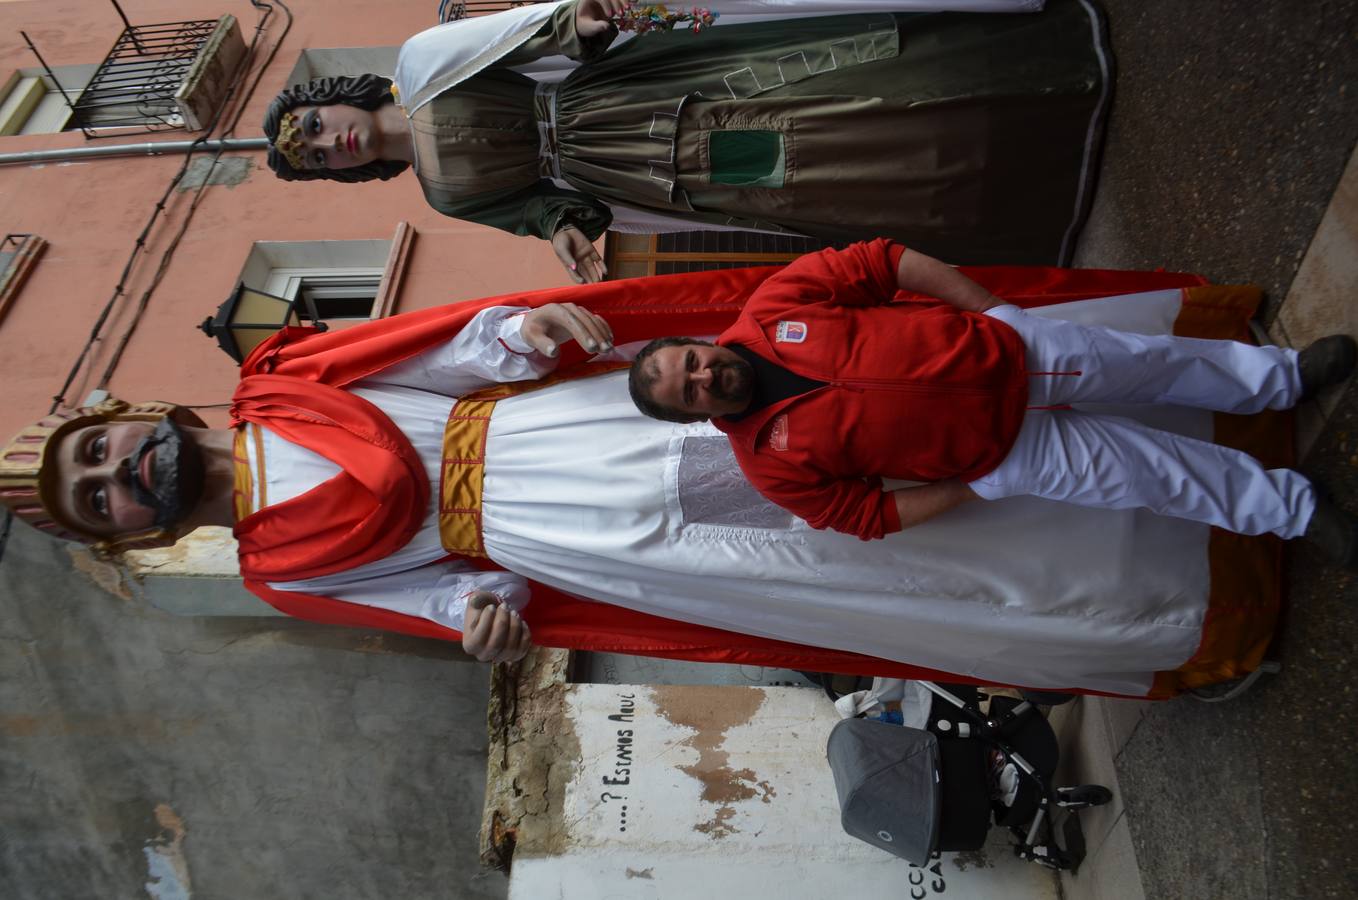 En el día grande, los santos Emeterio y Celedonio salieron a la calle en una procesión muy participativa por Calahorra